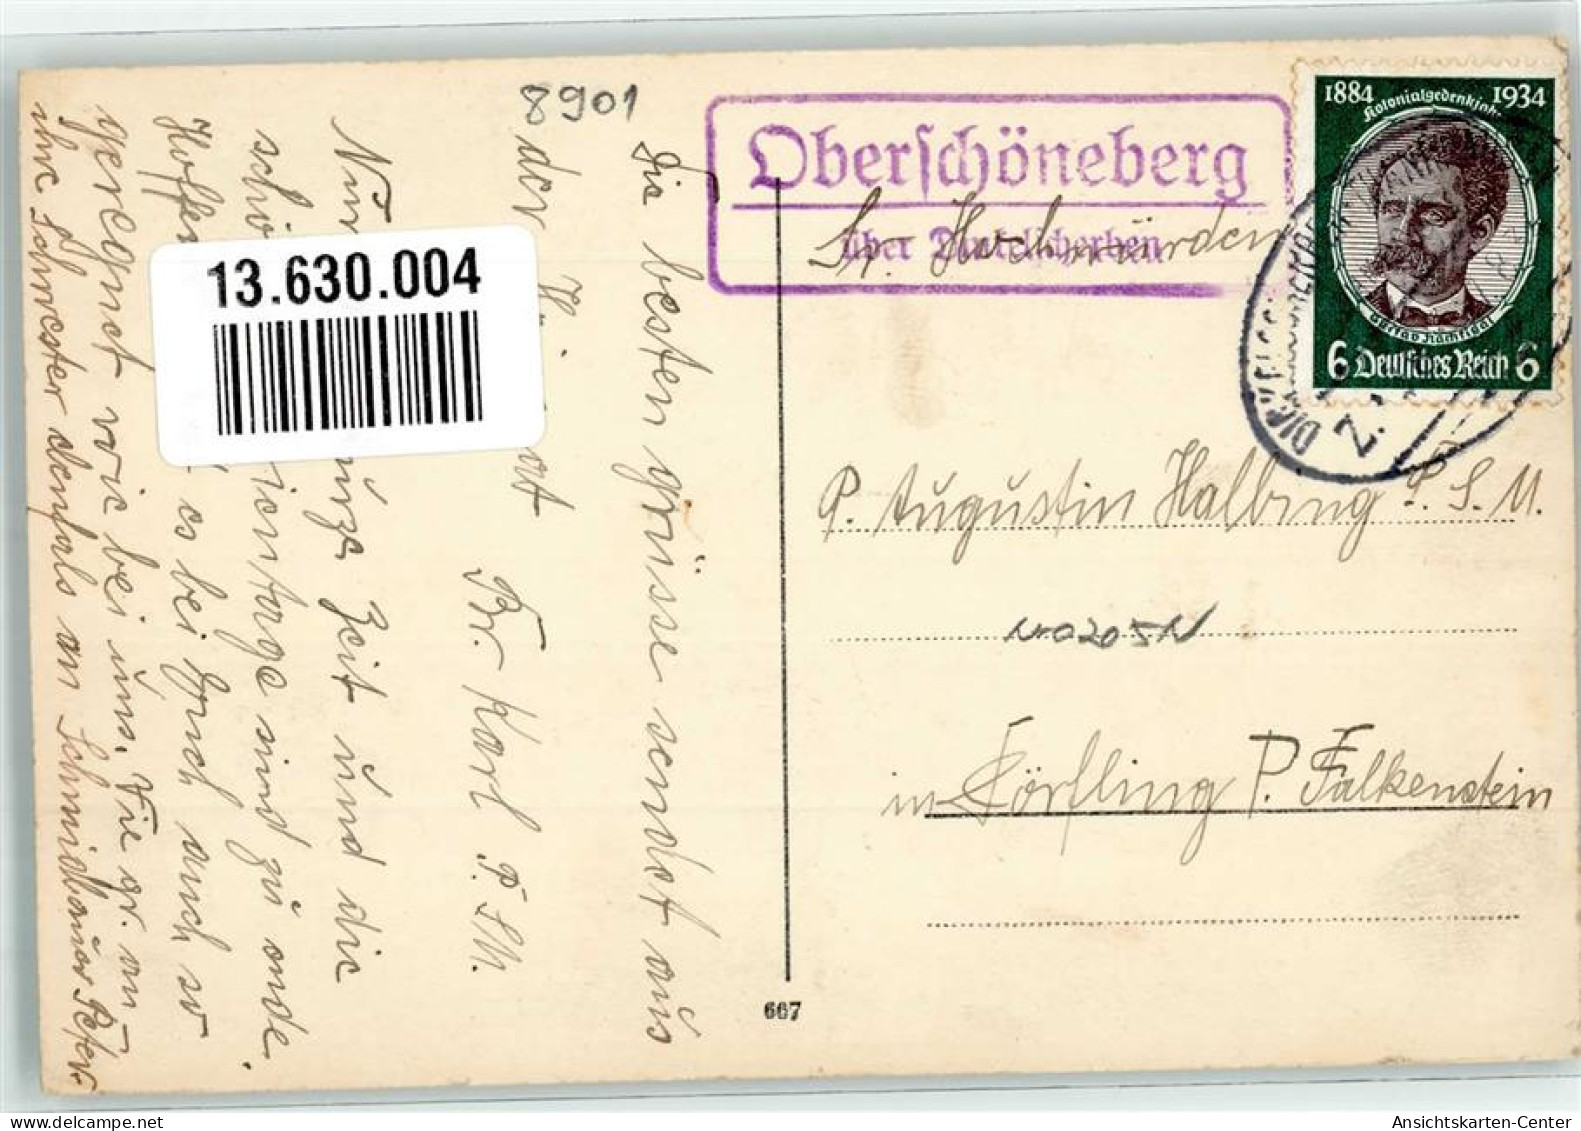 13630004 - Oberschoeneberg - Augsburg